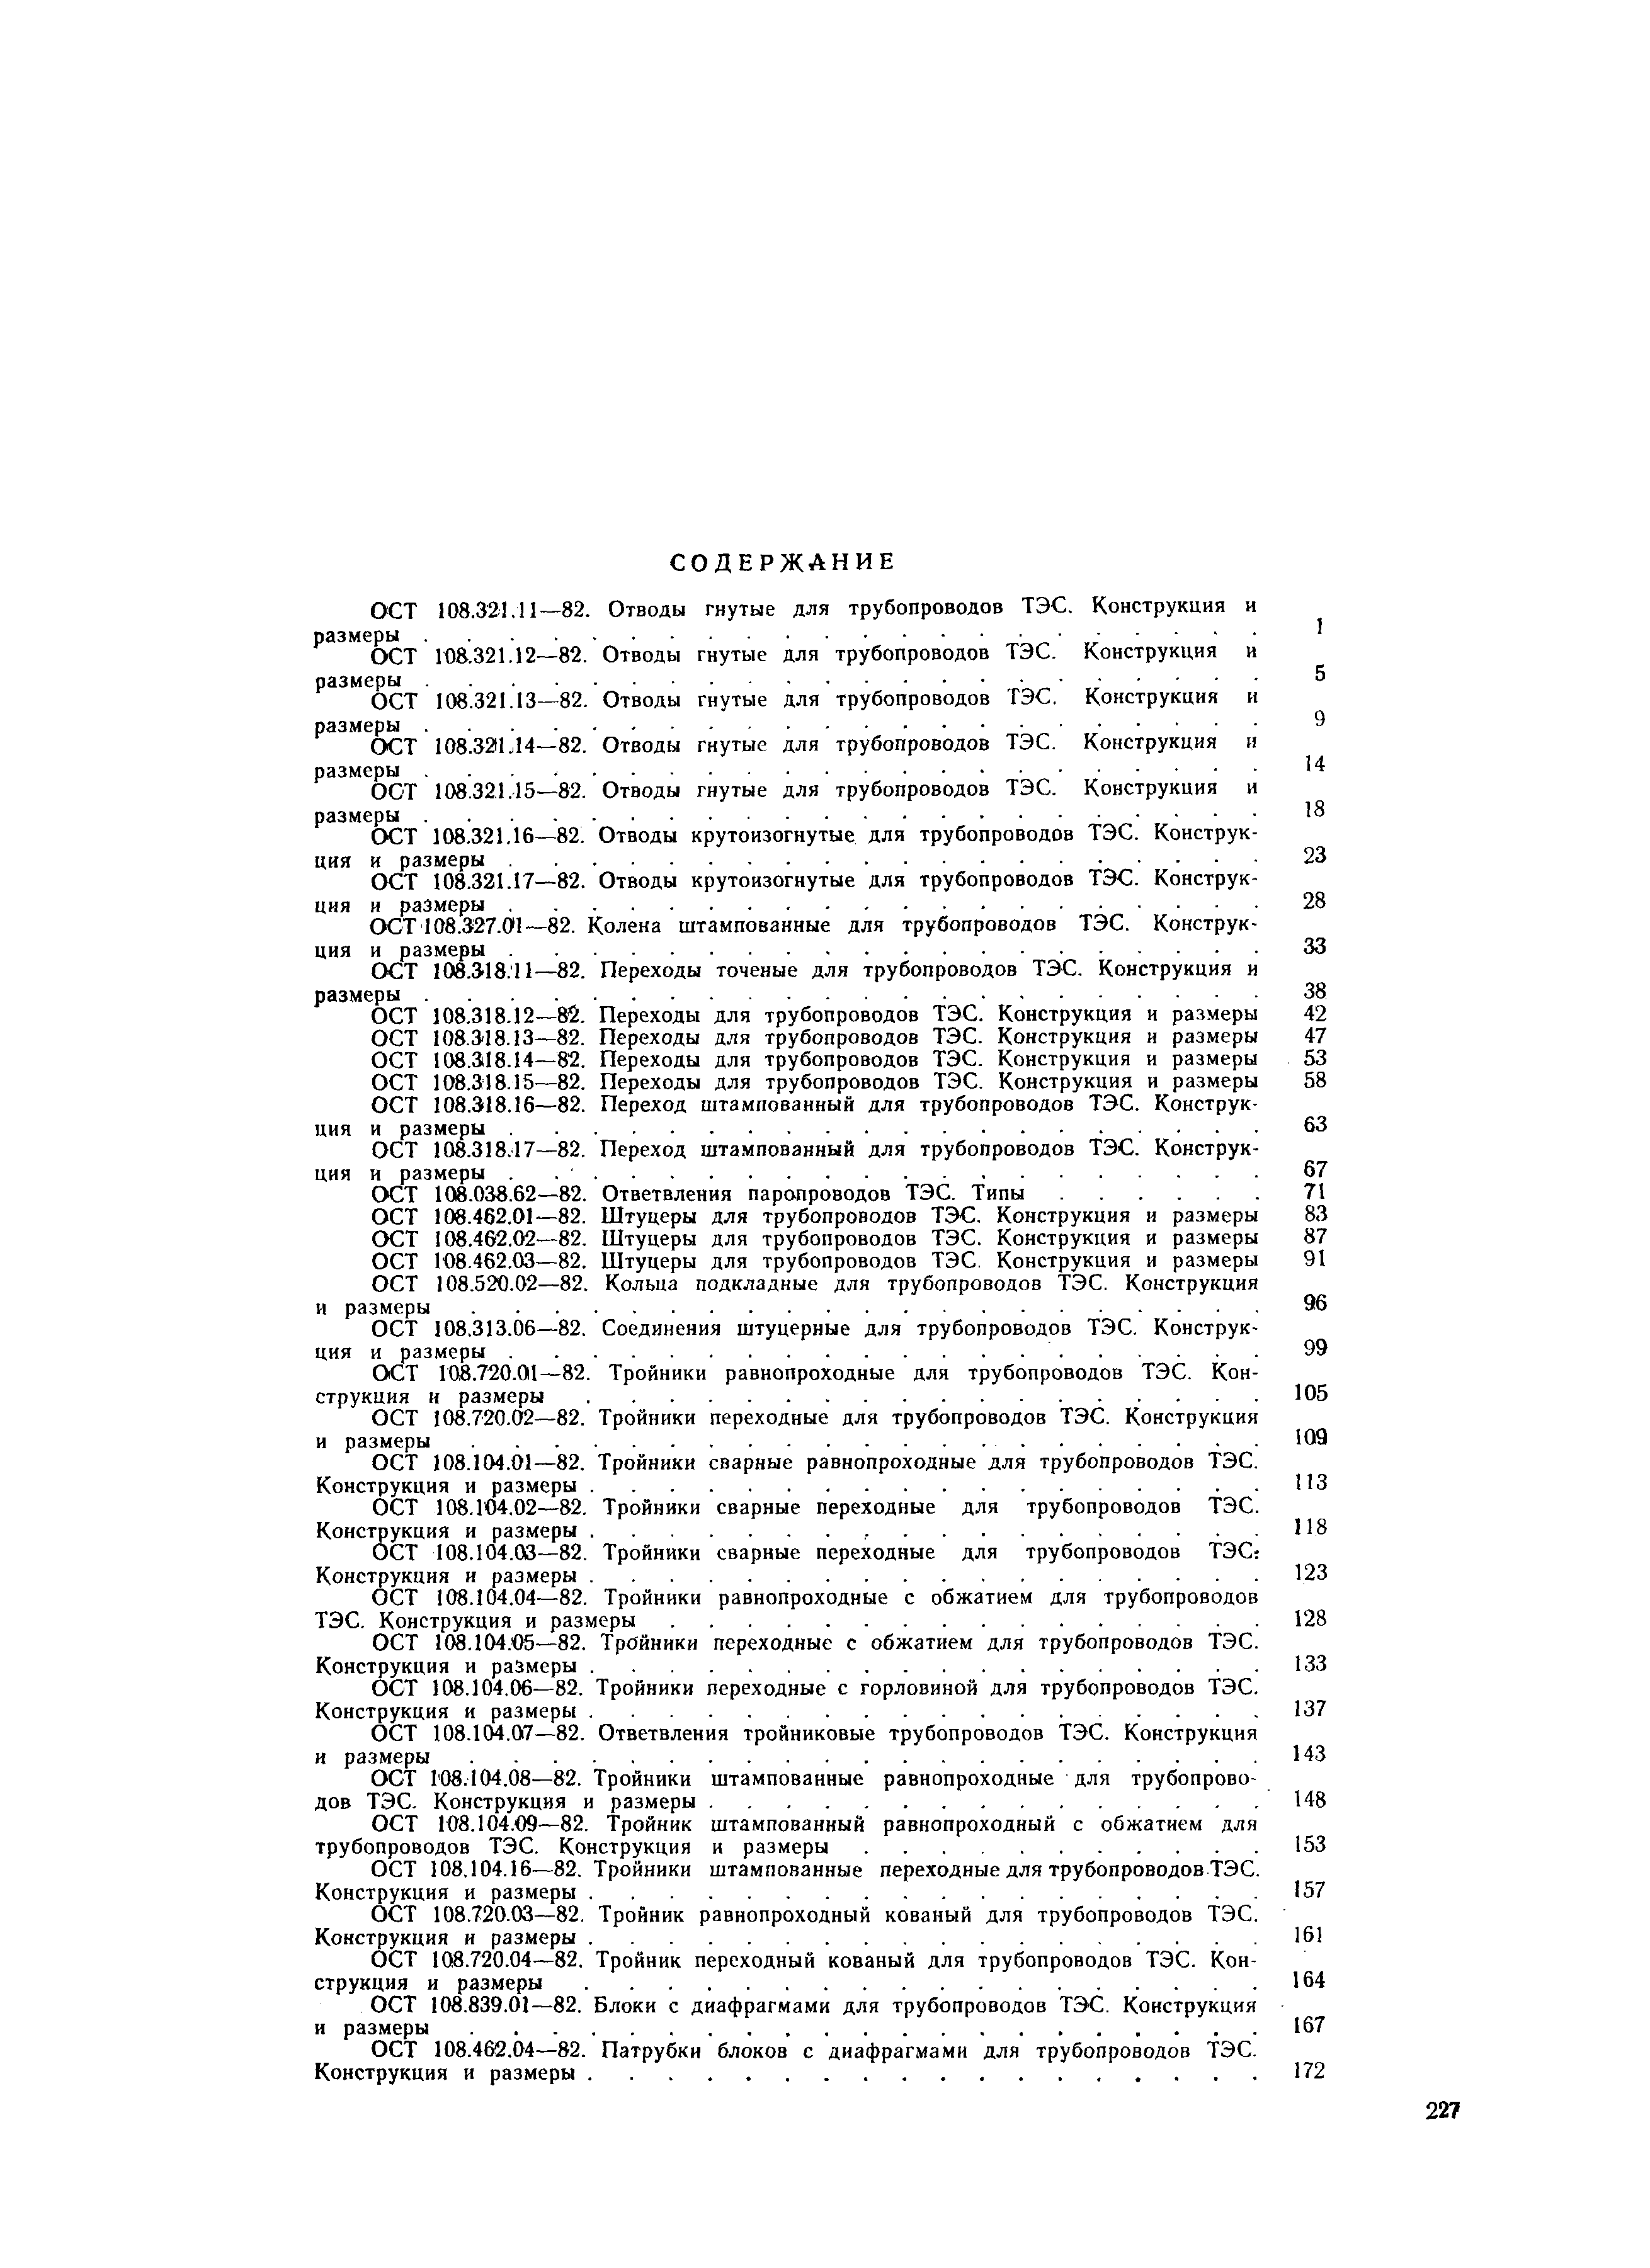 ОСТ 108.318.16-82